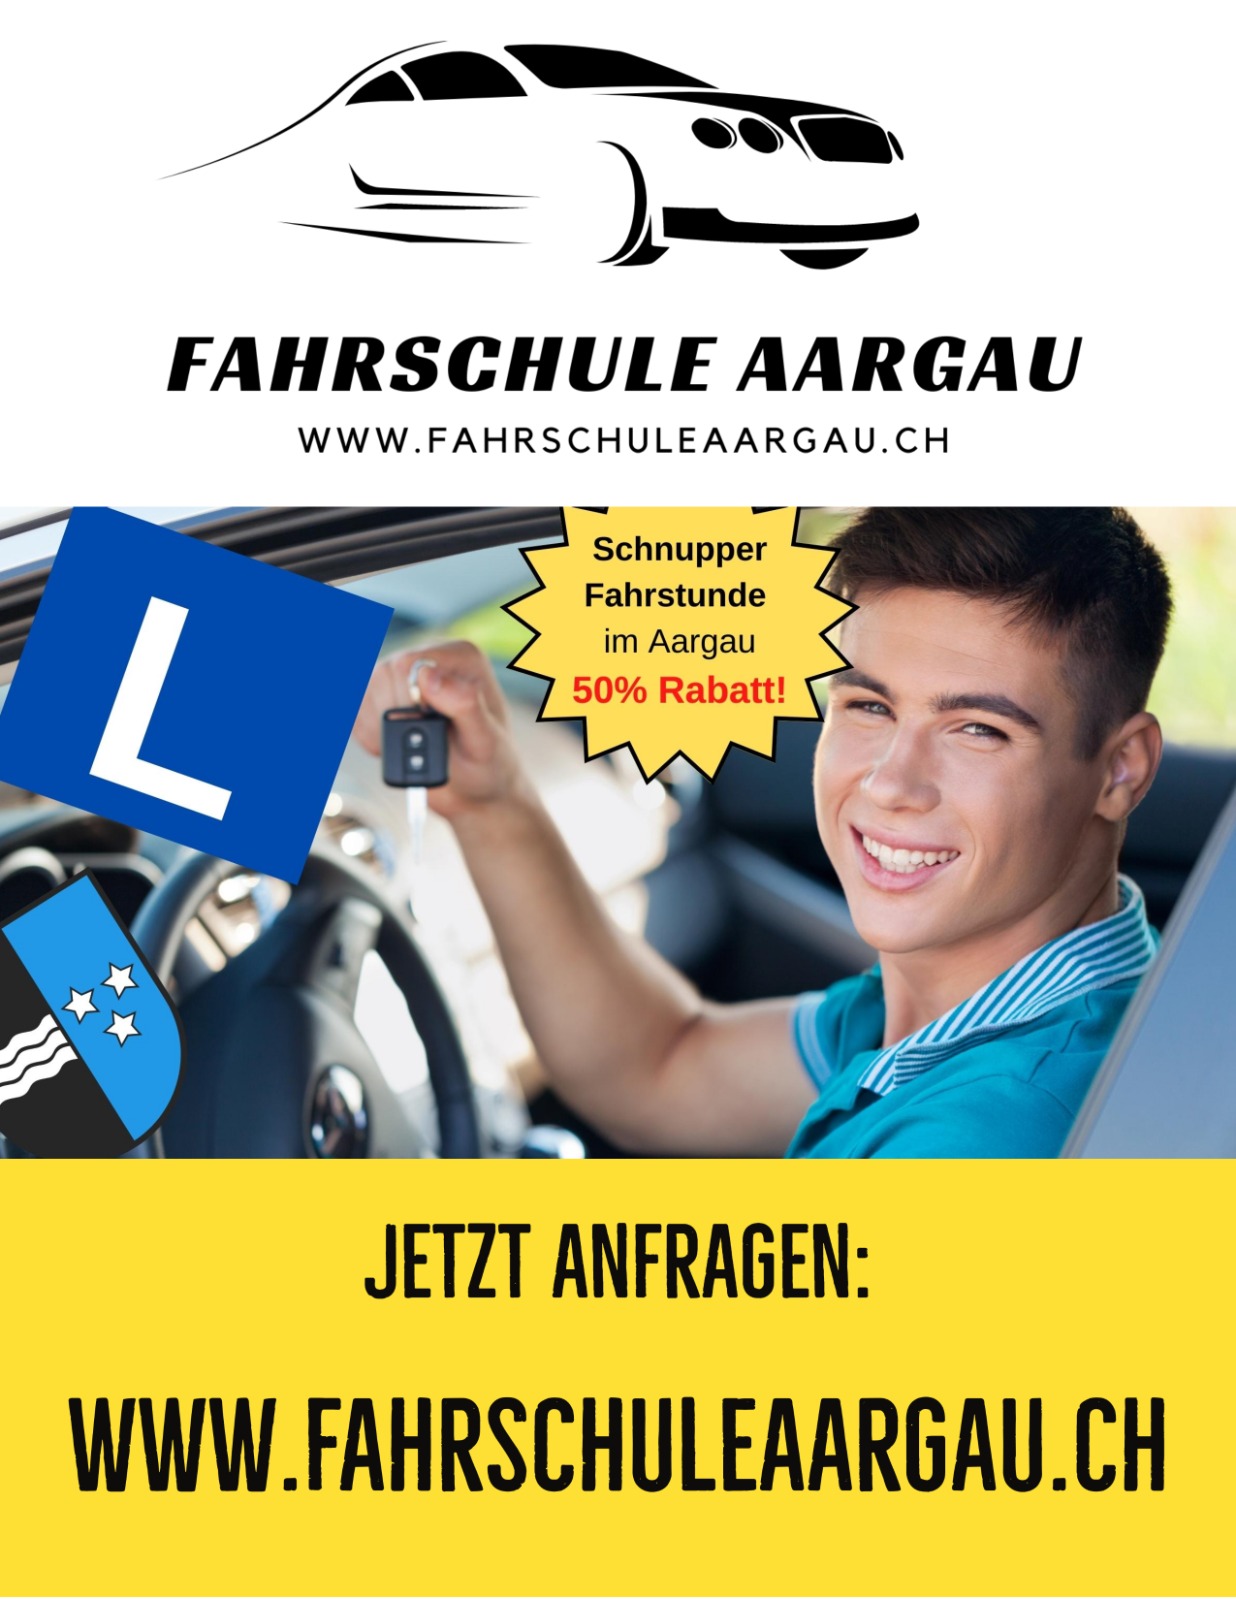 Immagini Fahrschule Aargau